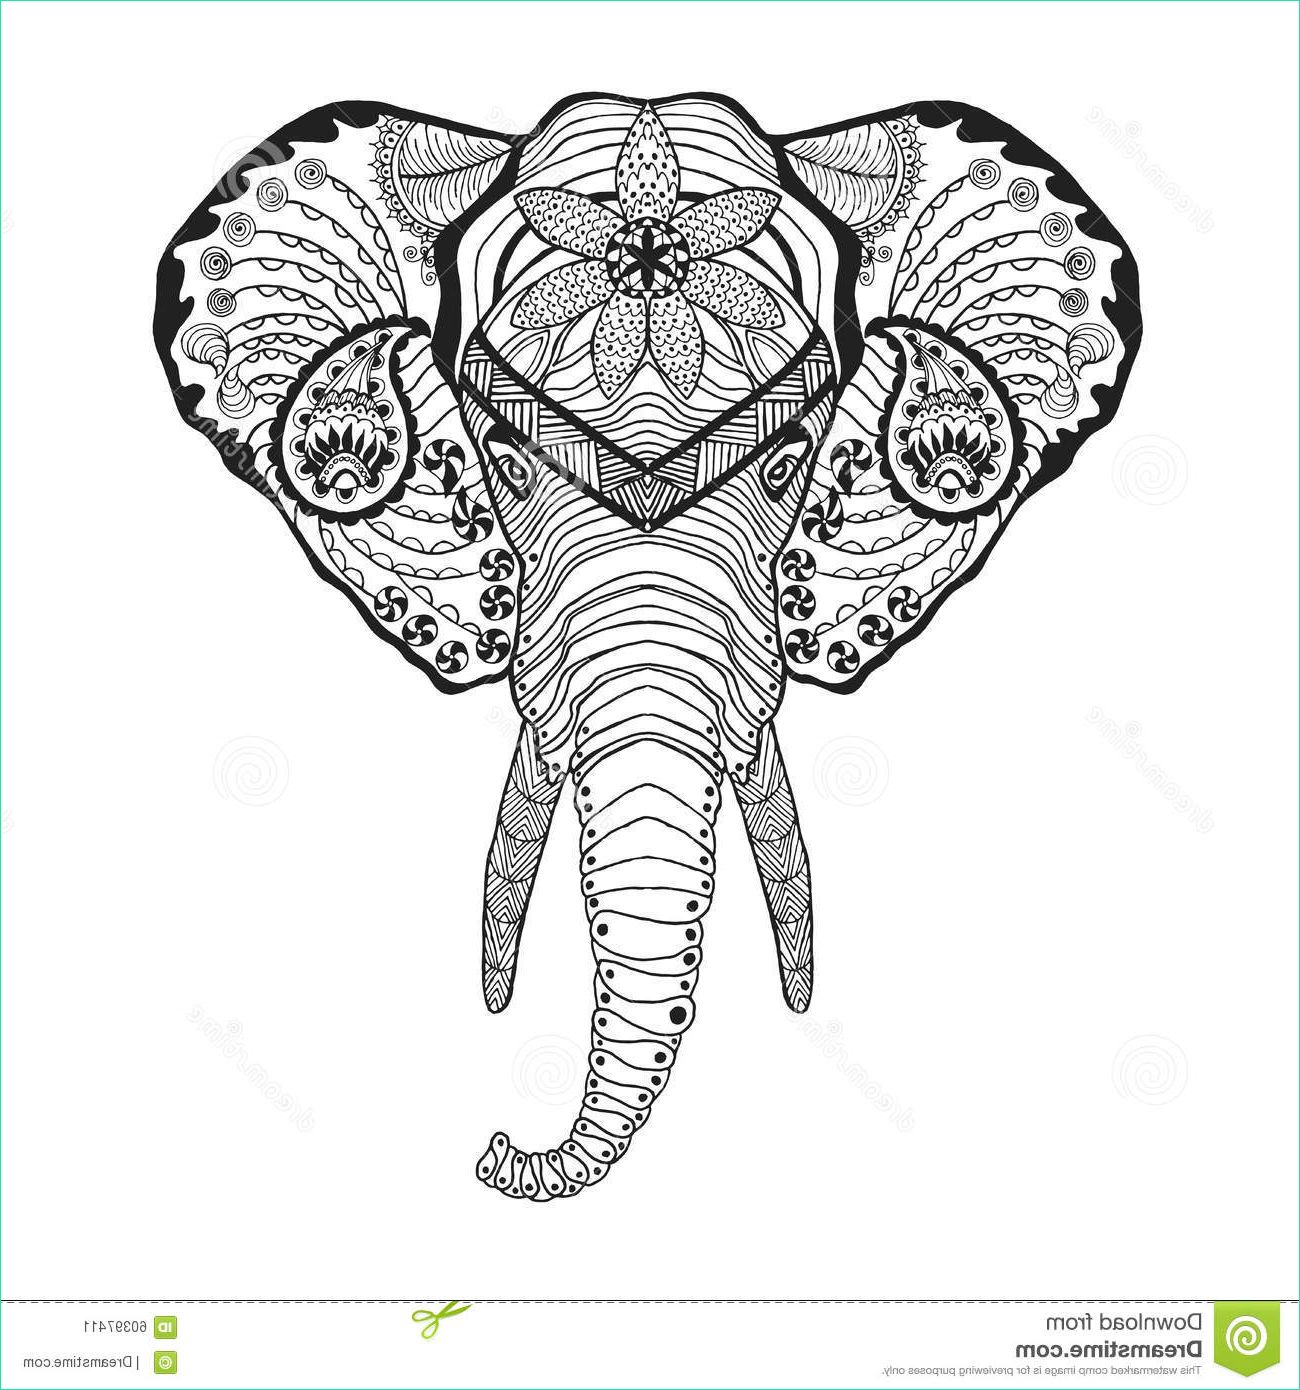 Dessin Tete D&amp;#039;elephant Beau Collection Zentangle A Stylisé La Tête D éléphant Croquis Pour Le